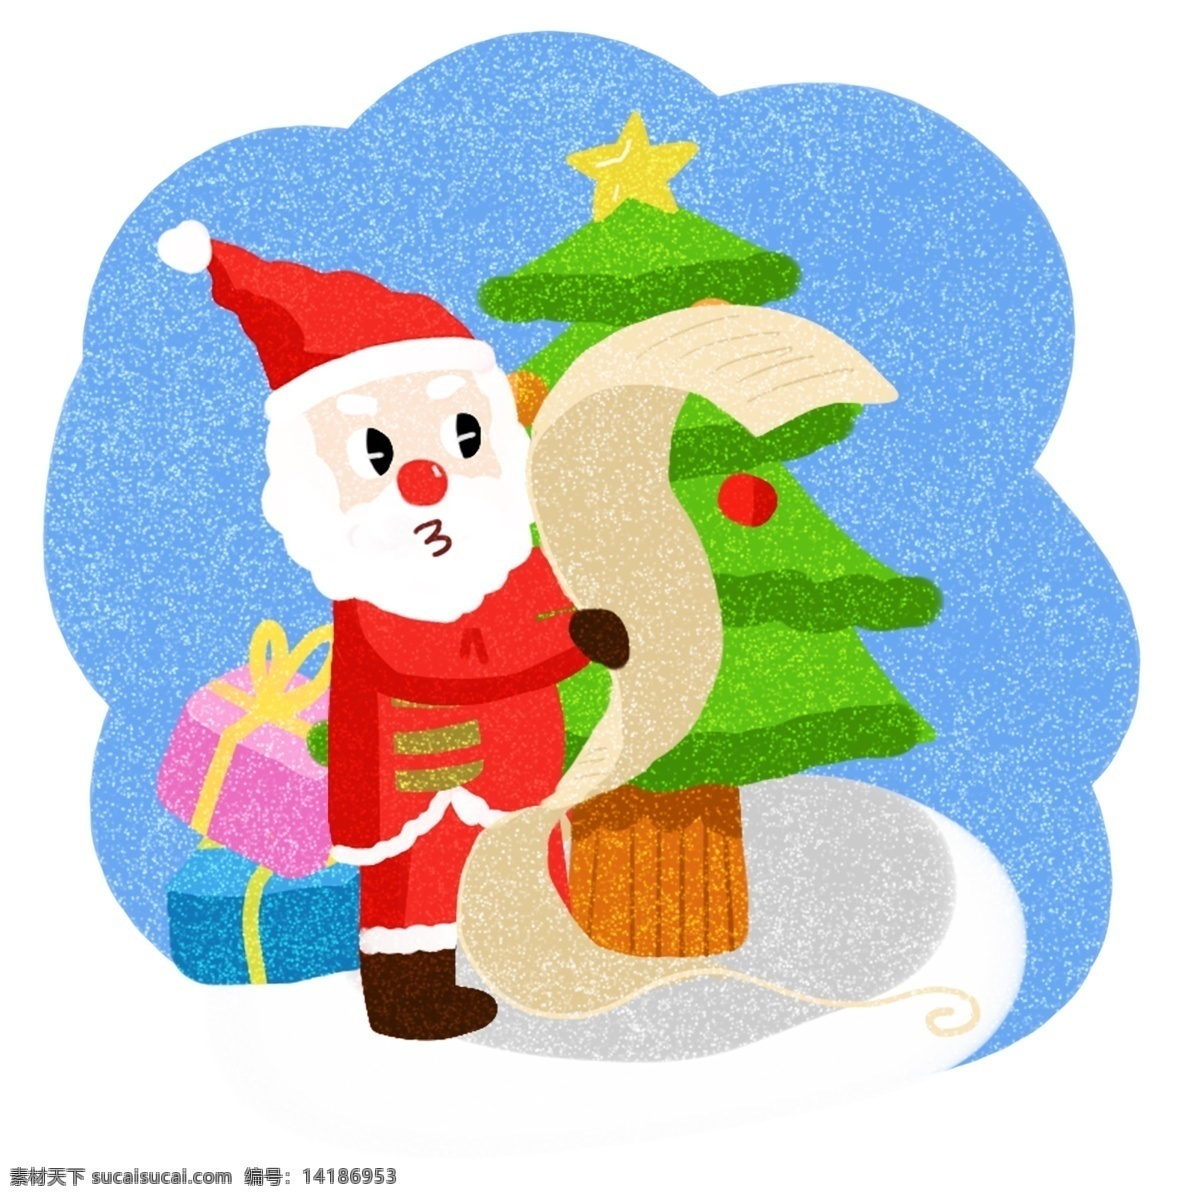 圣诞节 可爱 圣诞老人 卡通 插画 派送 礼物 合集 圣诞 过节 节日 冬季 淘宝 天猫 海报 活动 促销 大促 送礼物的老人